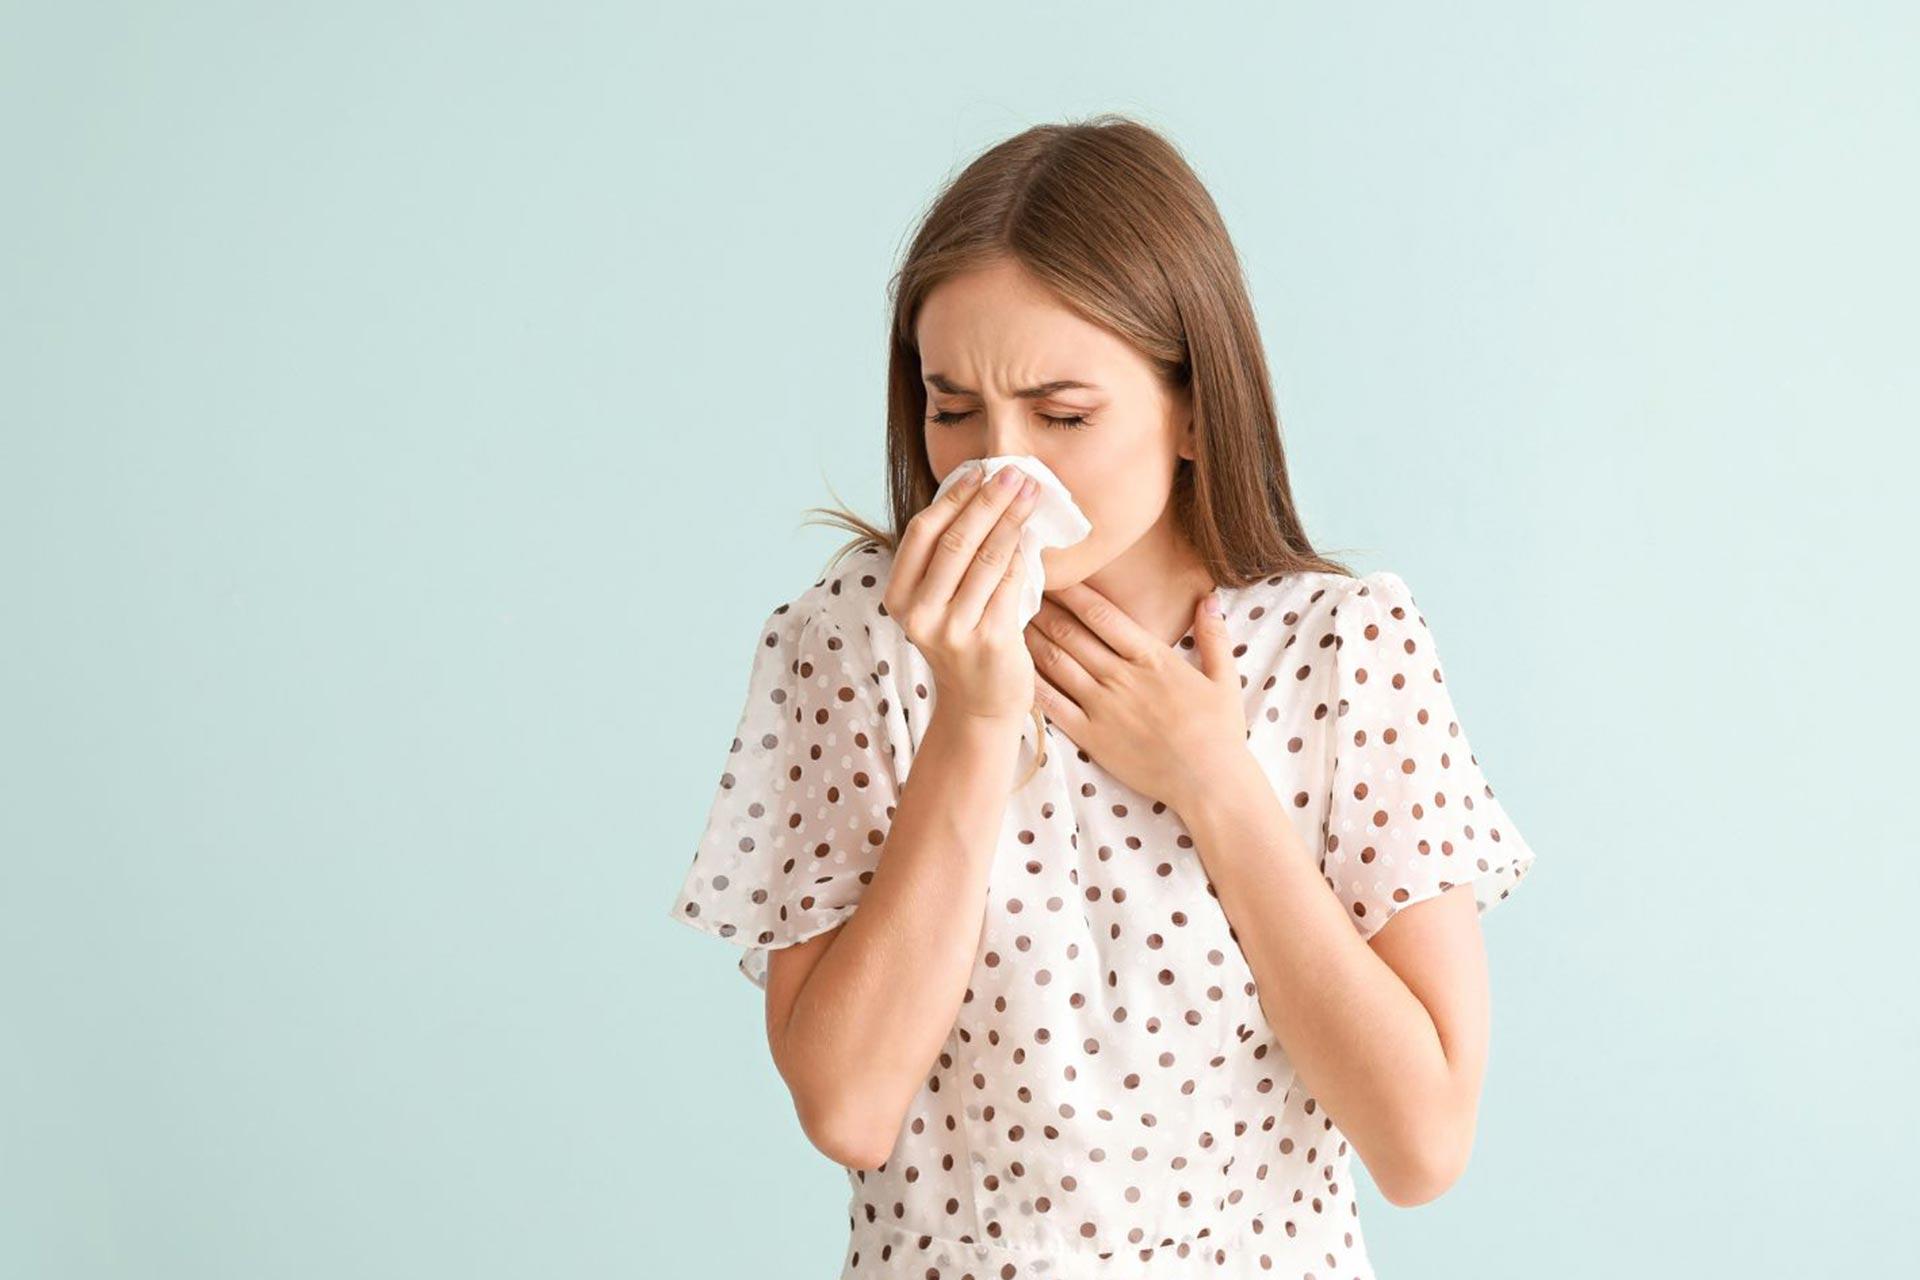 Allergia on kehon immuunipuolustuksen yliherkkyyttä, jonka hoitoon on monia keinoja